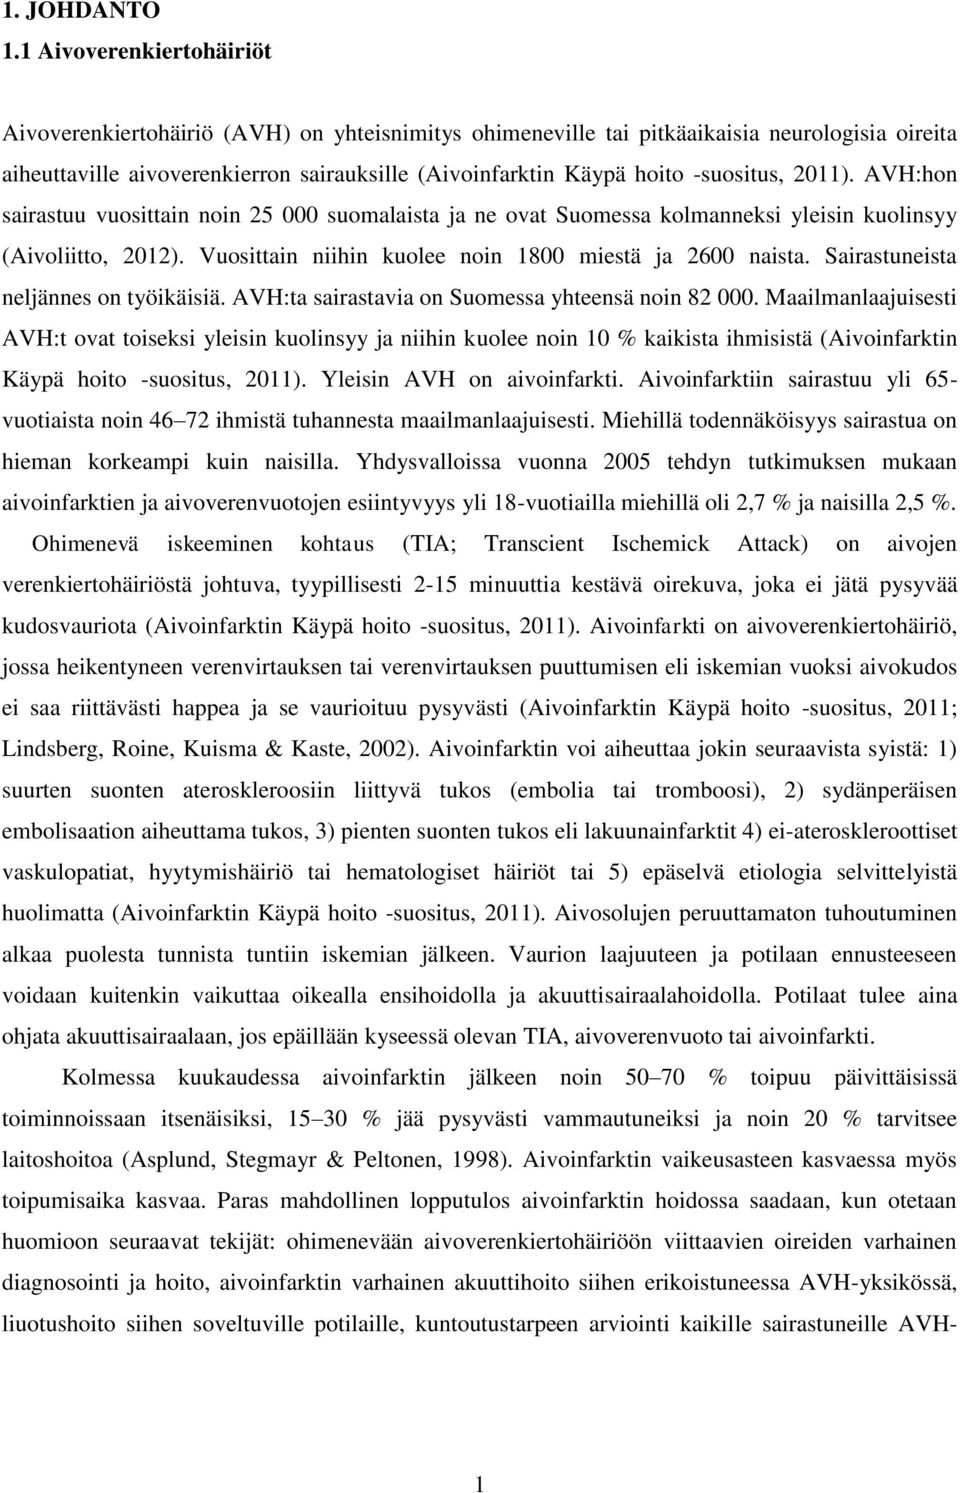 -suositus, 2011). AVH:hon sairastuu vuosittain noin 25 000 suomalaista ja ne ovat Suomessa kolmanneksi yleisin kuolinsyy (Aivoliitto, 2012). Vuosittain niihin kuolee noin 1800 miestä ja 2600 naista.